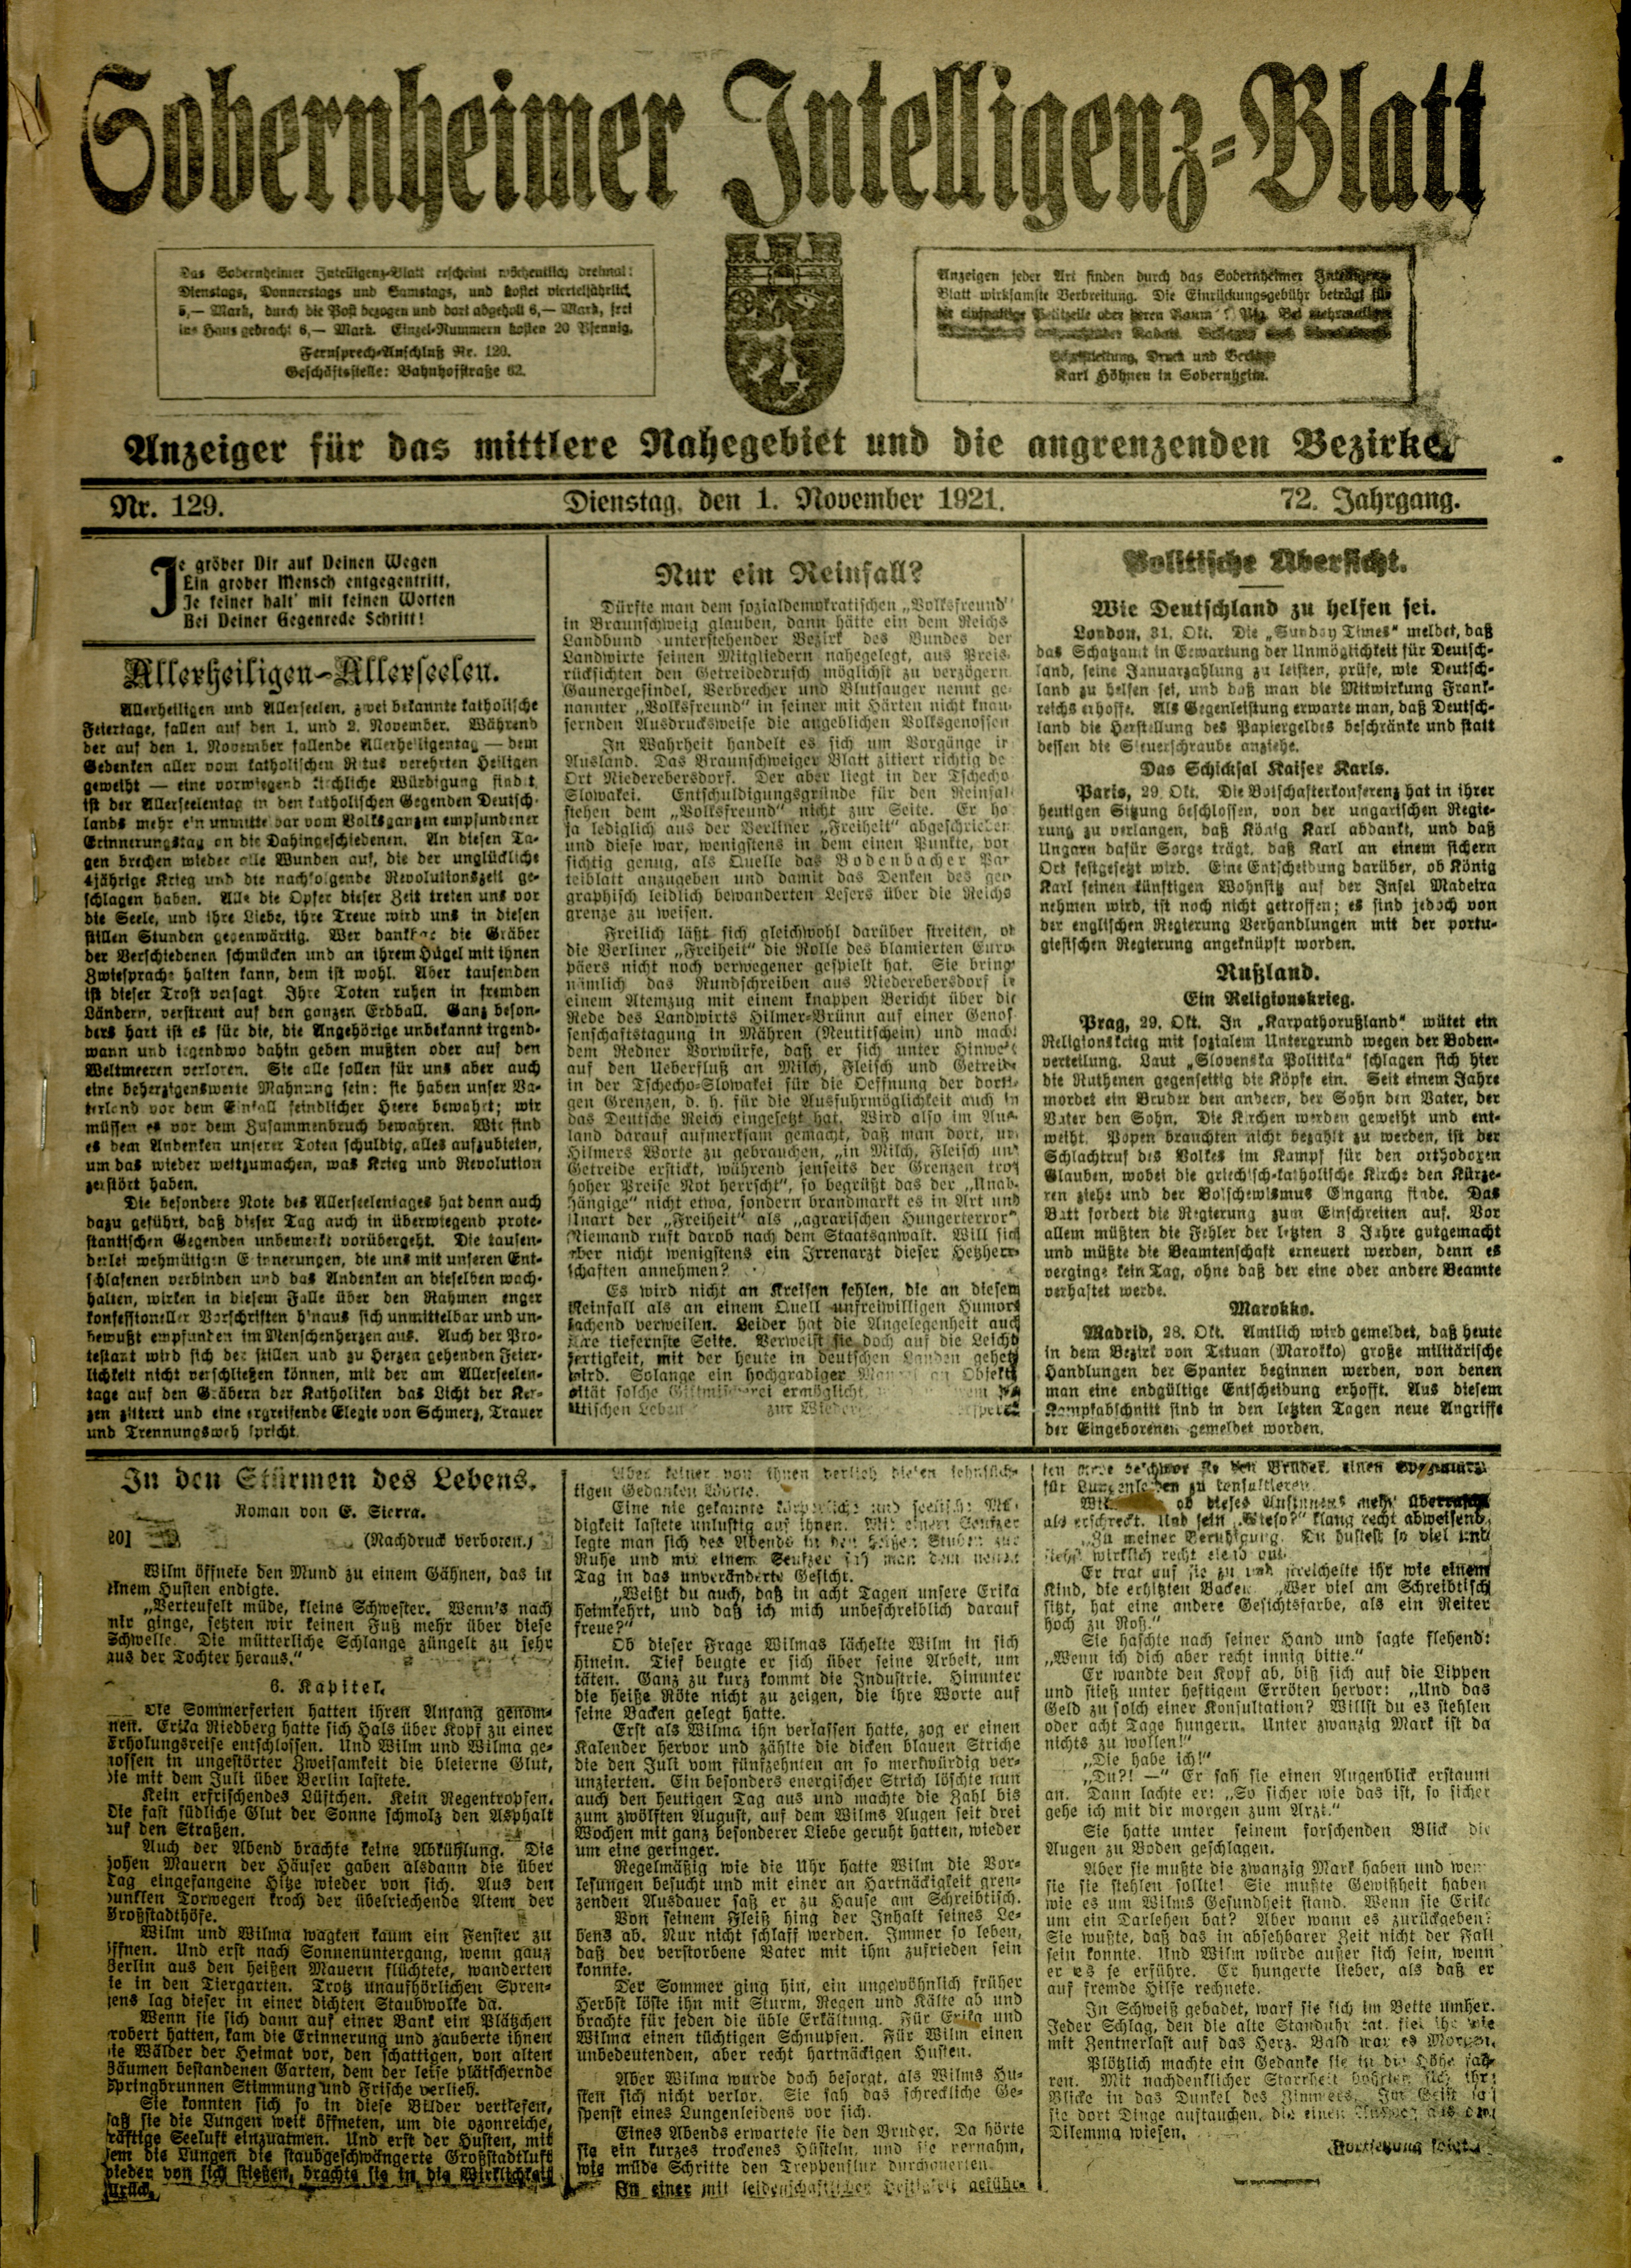 Zeitung: Sobernheimer Intelligenzblatt; November 1921, Jg. 72 Nr. 129 (Heimatmuseum Bad Sobernheim CC BY-NC-SA)